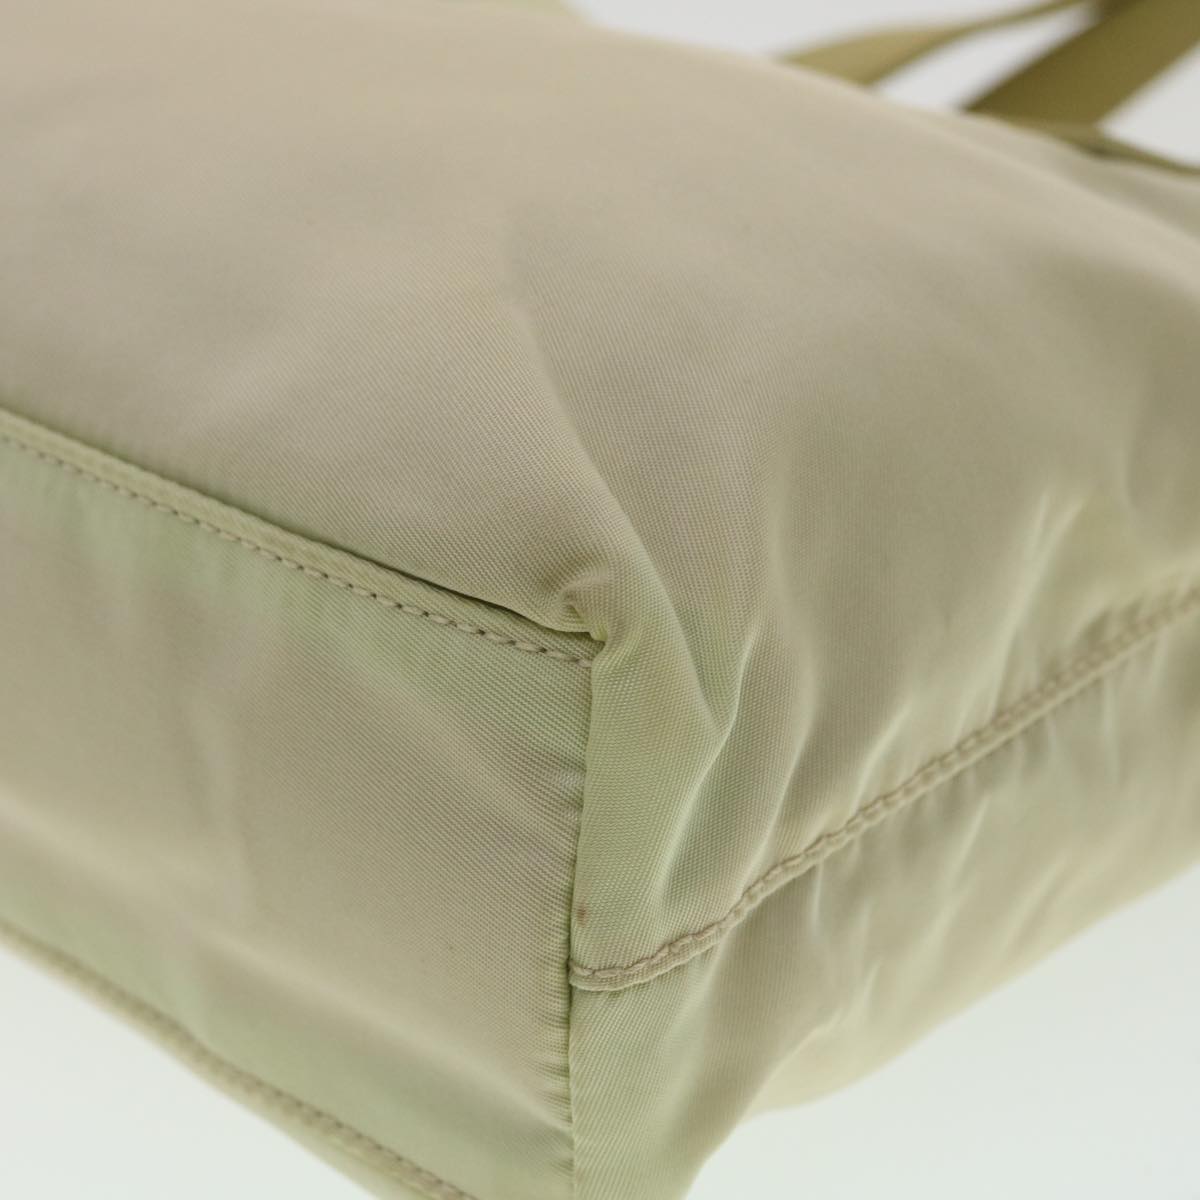 PRADA Hand Bag Nylon Khaki Auth 36416